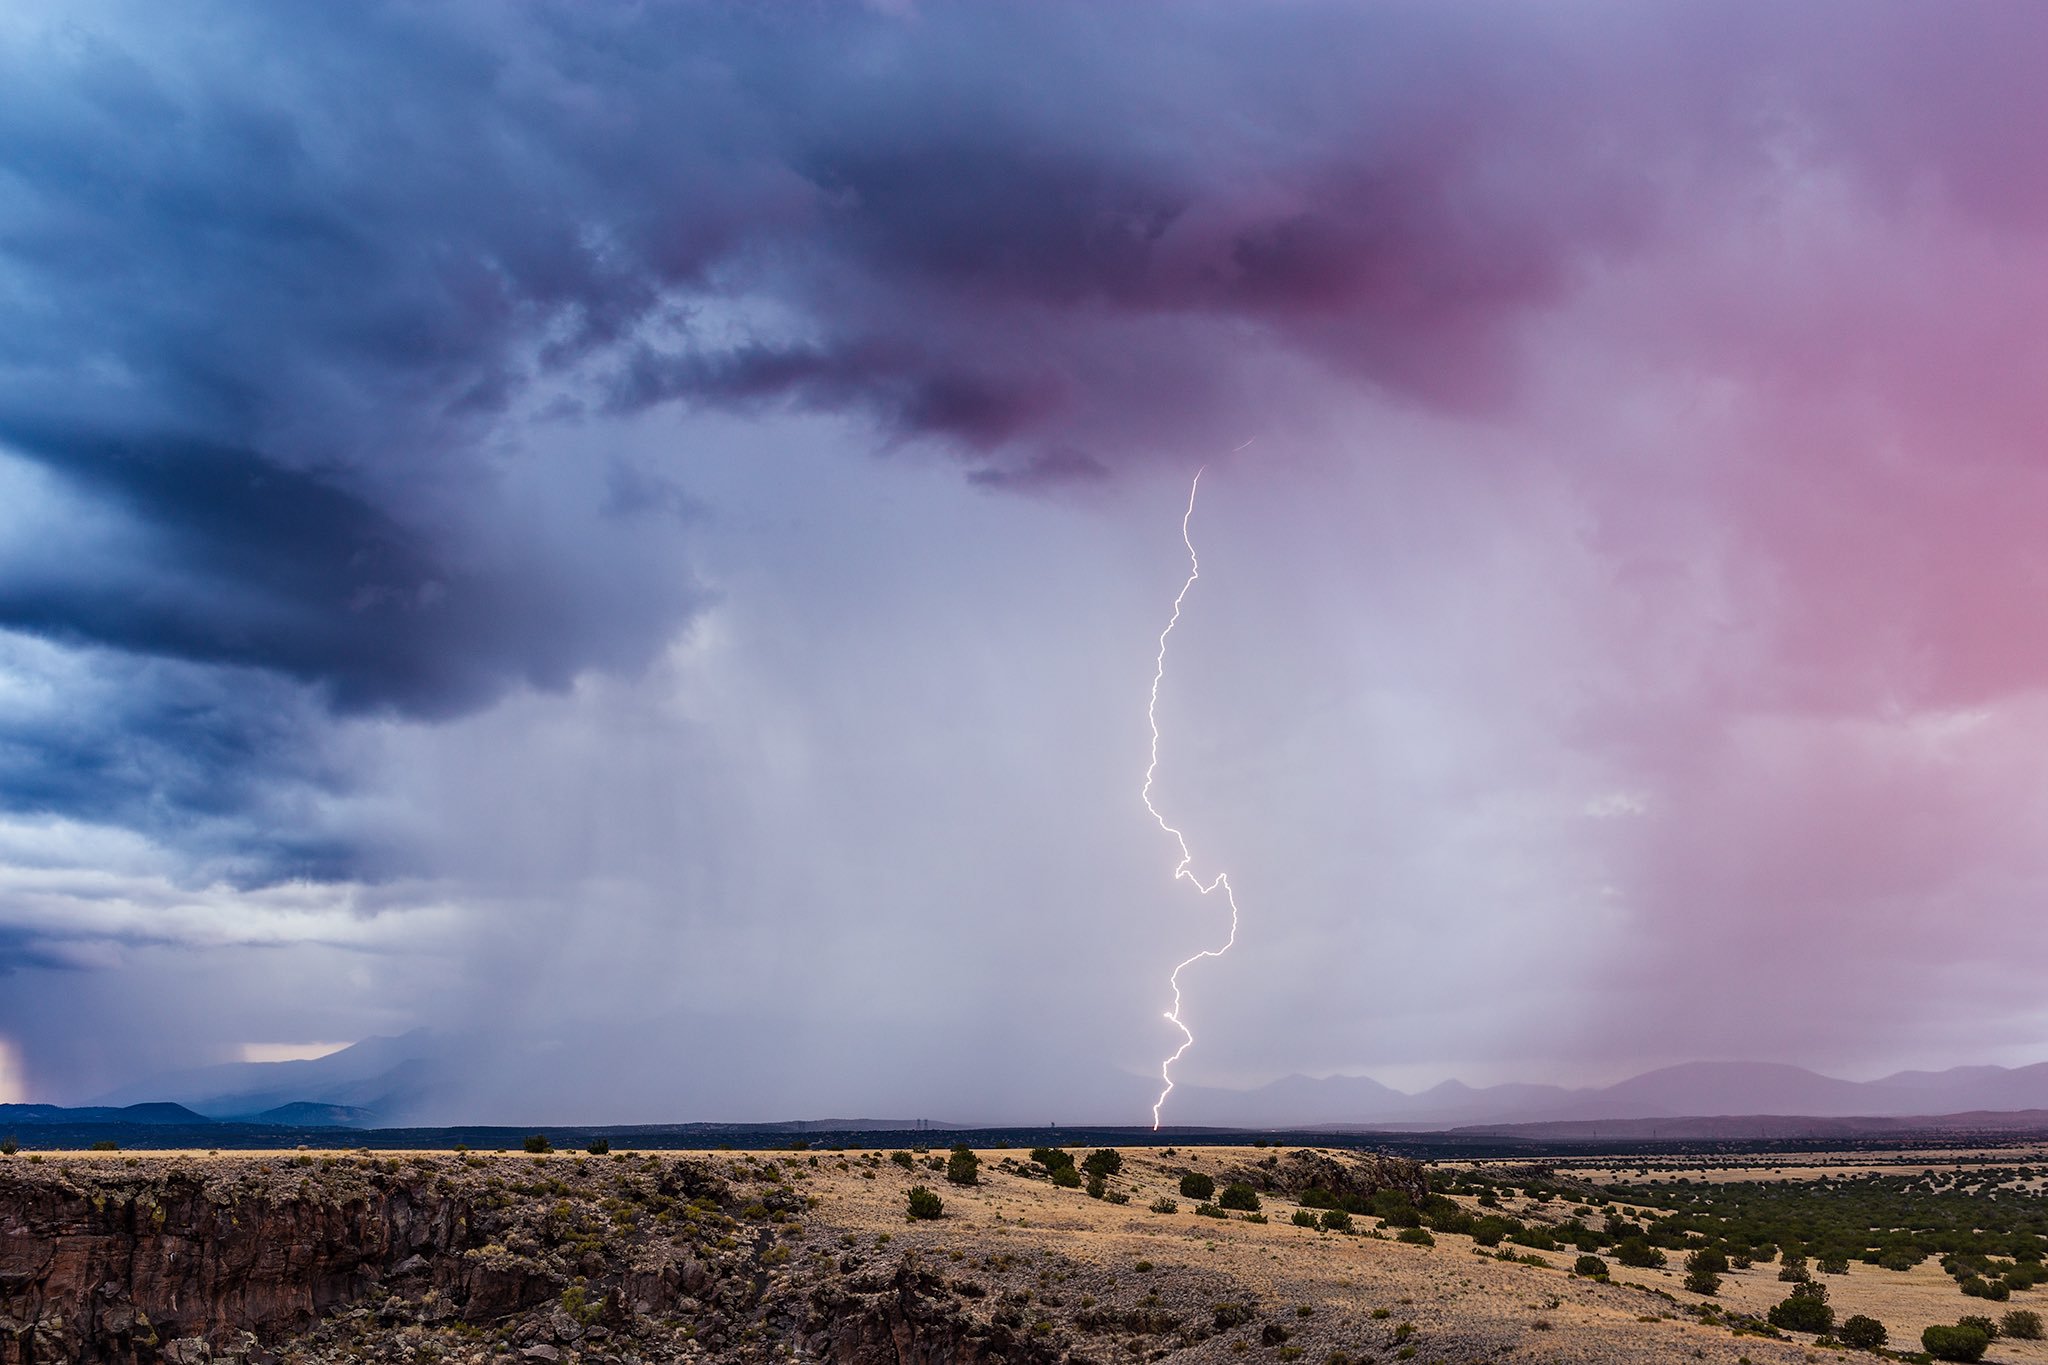 Sunset lightning in Wupatki National Monument, Arizona by John Sirlin @SirlinJohn